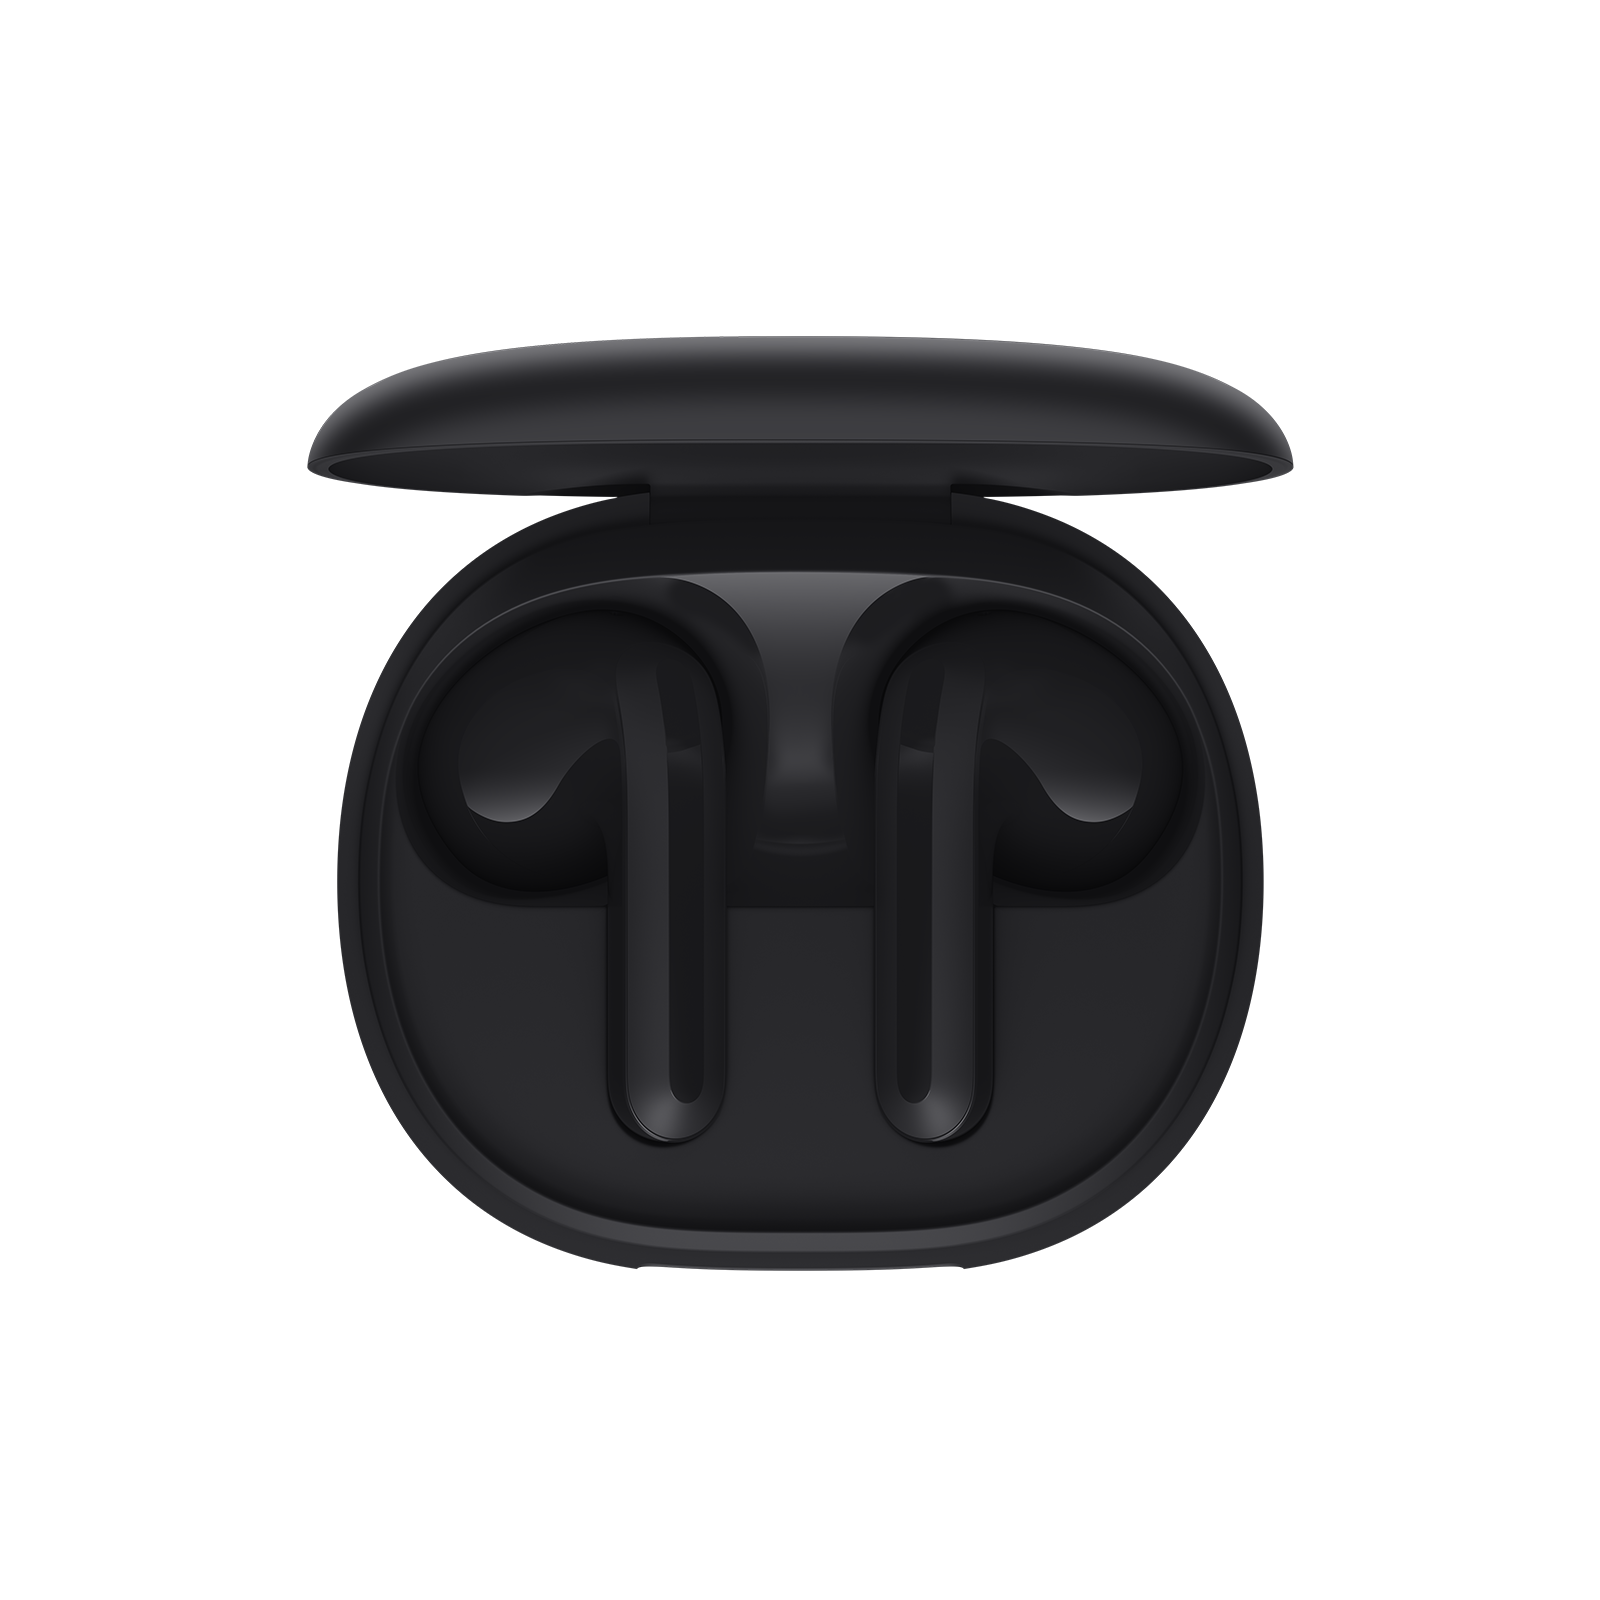 Reseña de los Exclusivos Auriculares: Xiaomi Buds 4 Pro